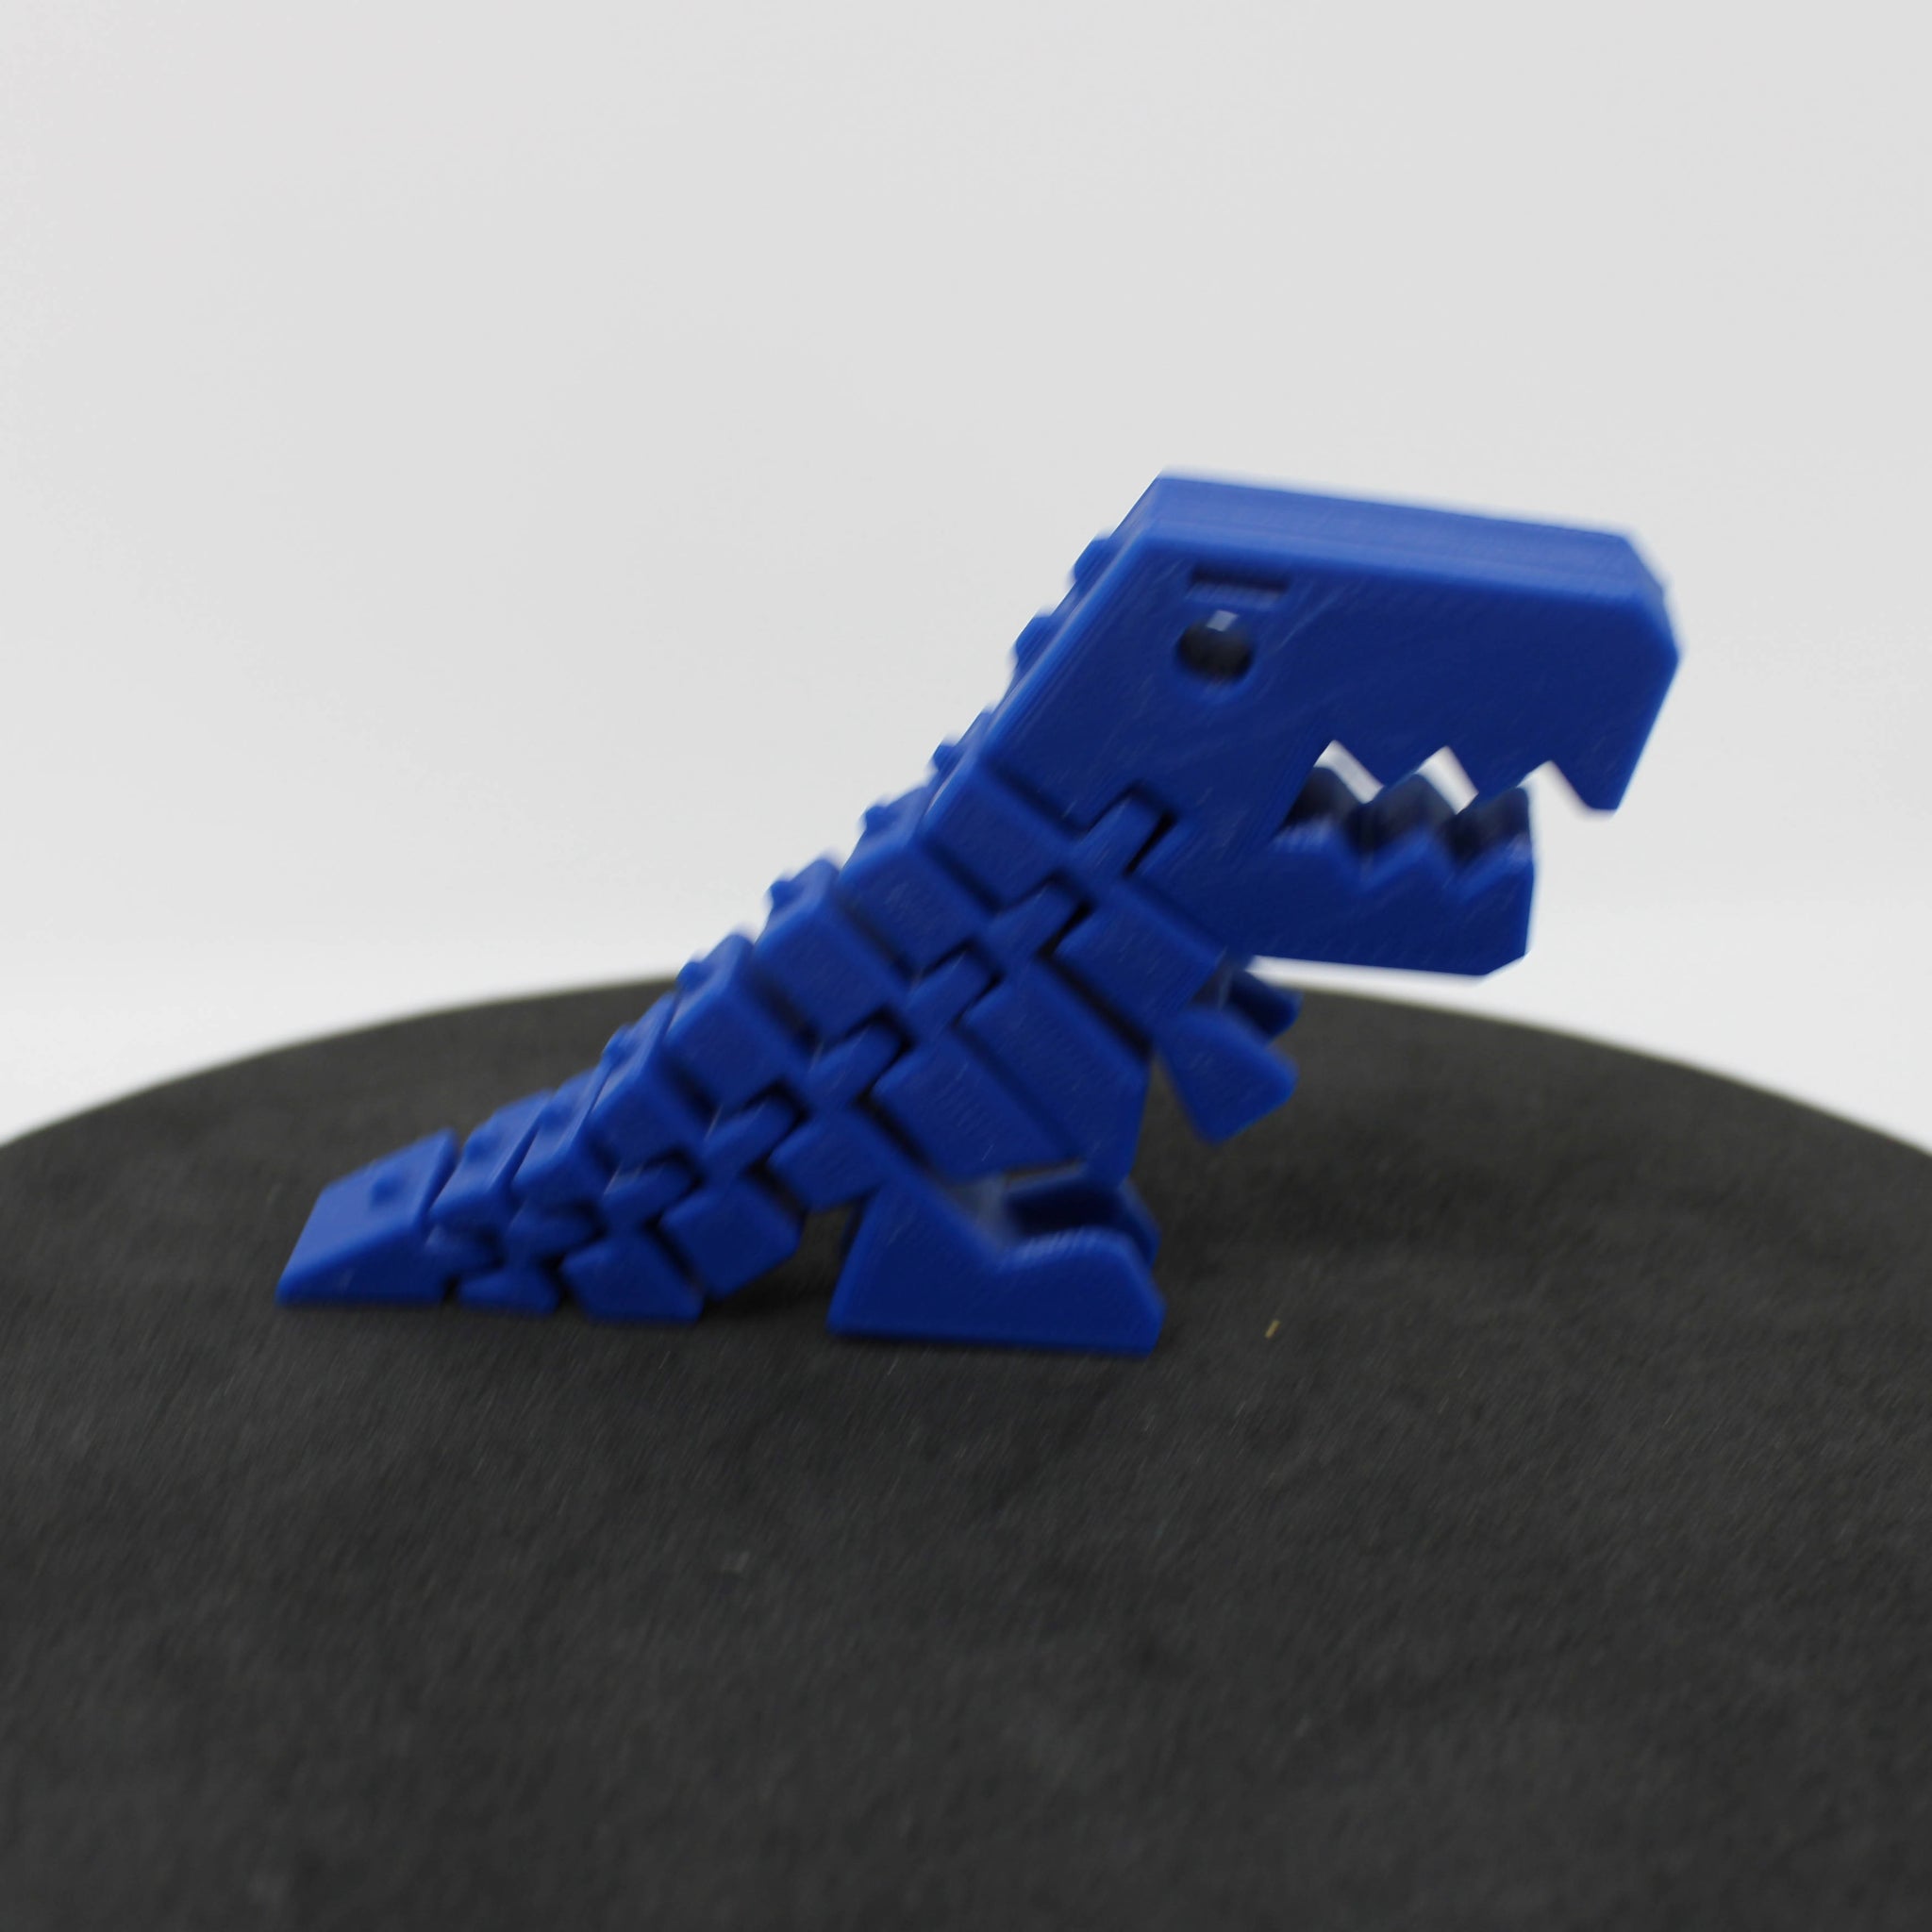 T-Rex fidget toy